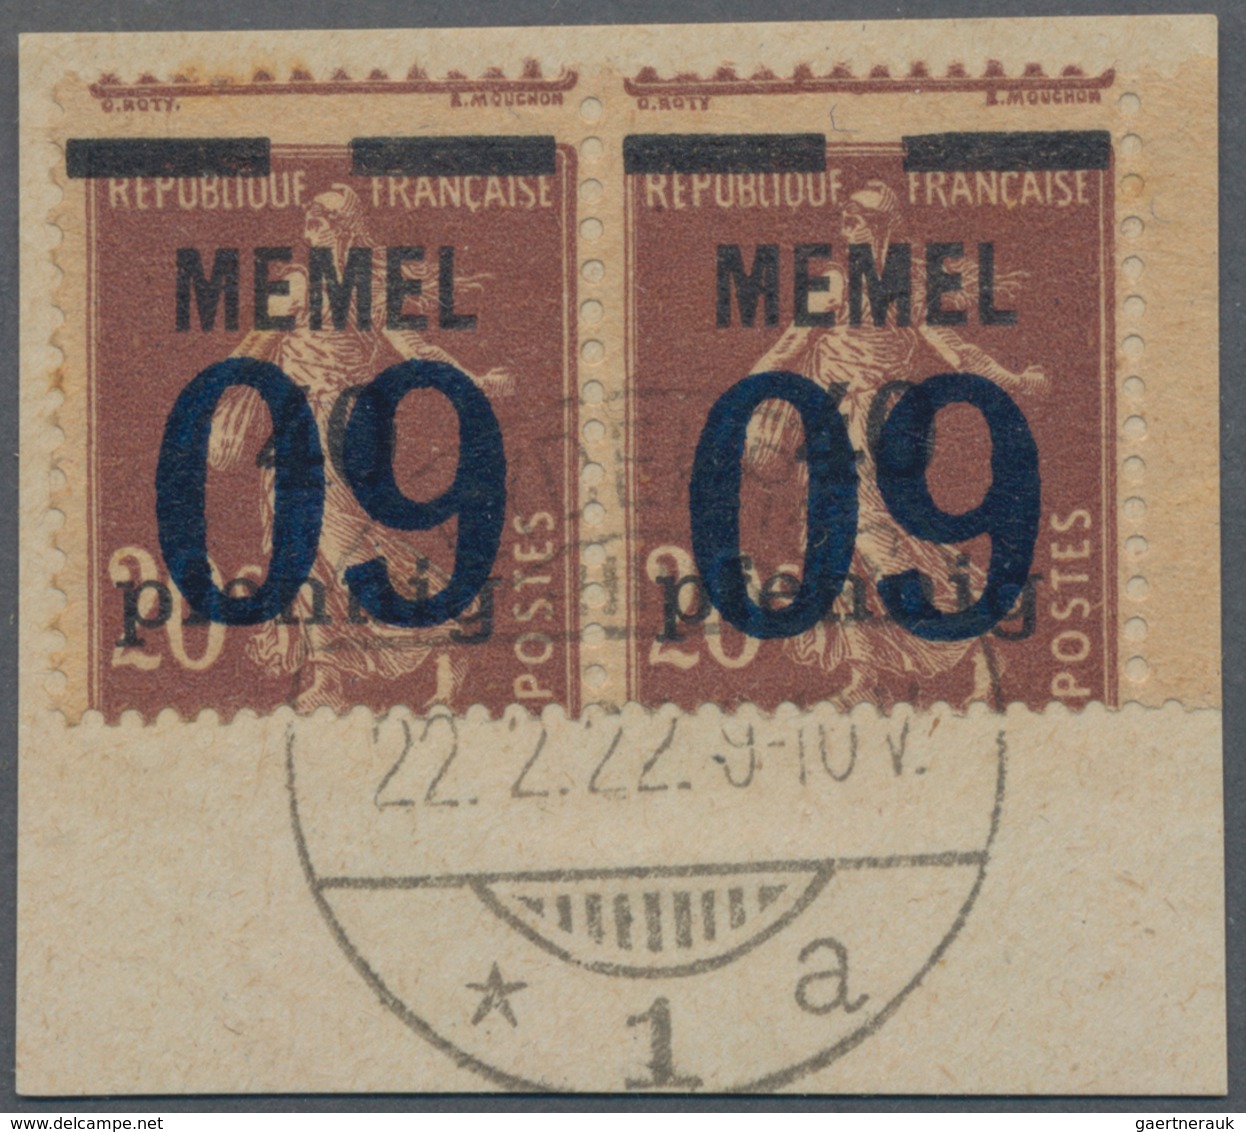 Memel: 1920/1923, hochkarätig besetzte Ausnahme-Sammlung auf selbstgestalteten Albenblättern sauber